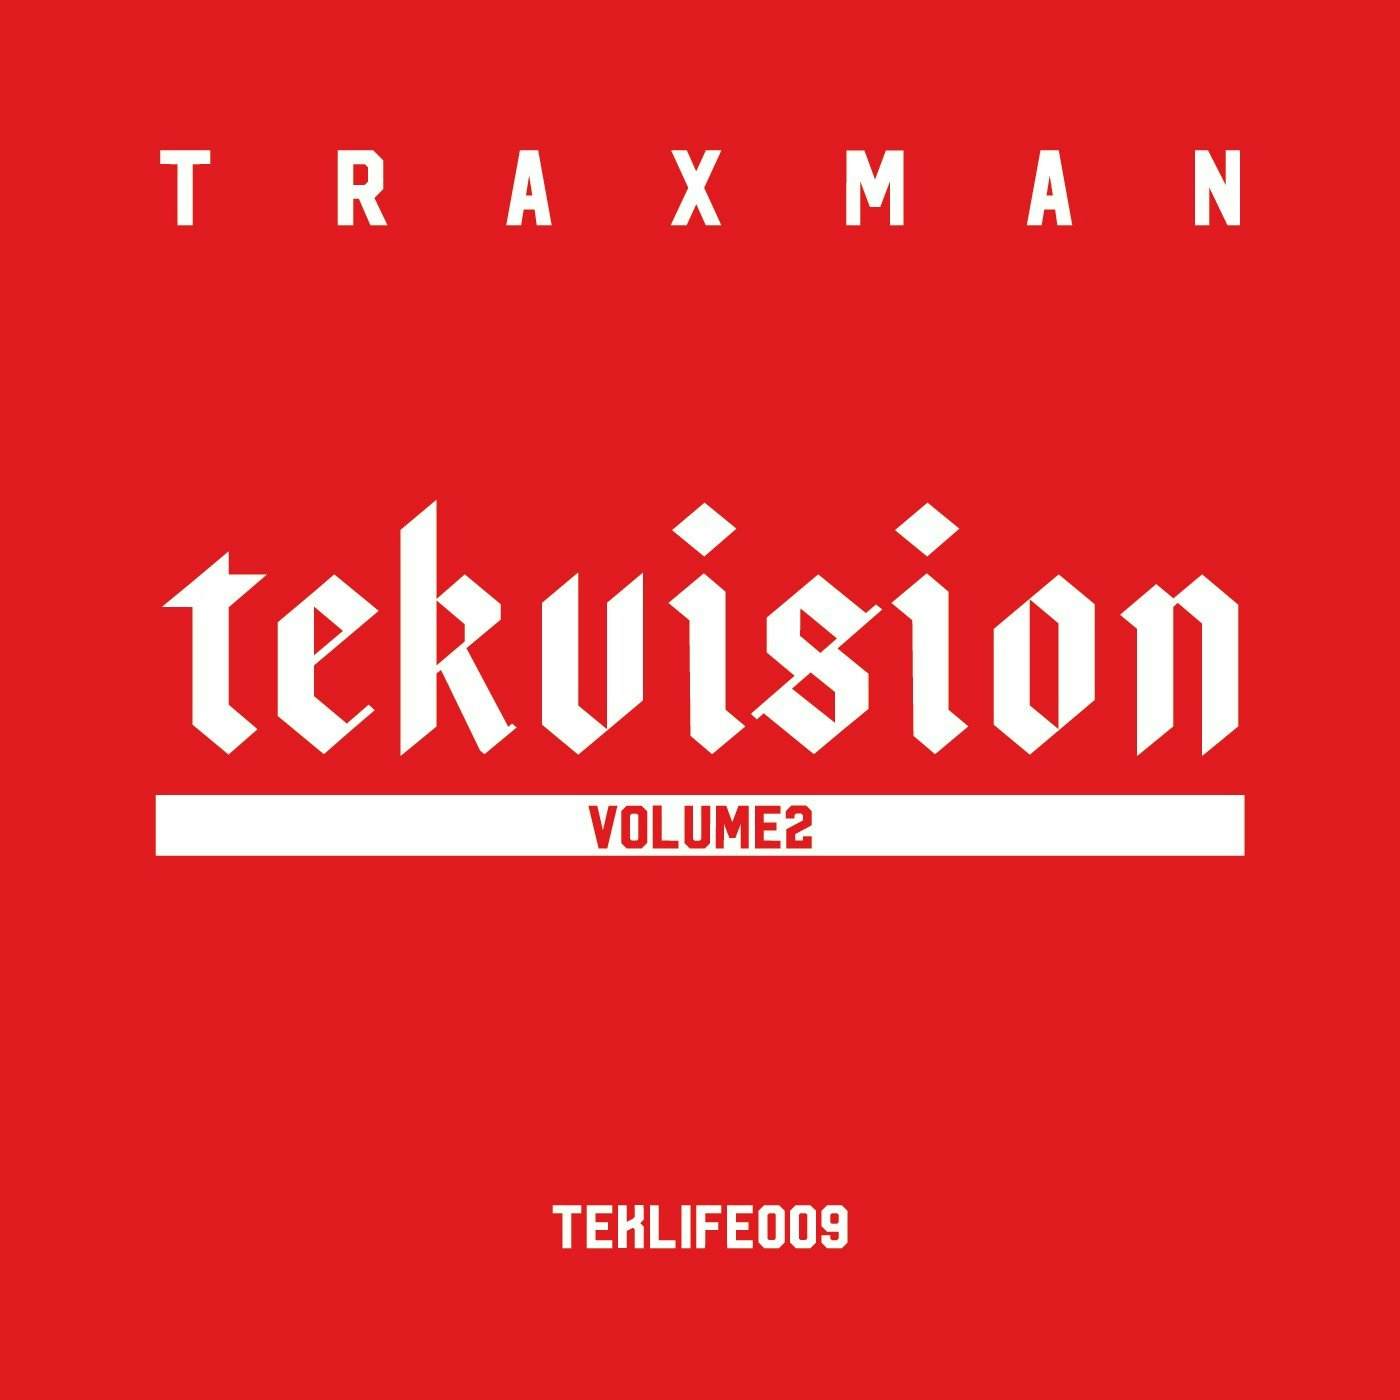 Traxman 'Tekvision Vol.2' Vinyl LP Vinyl Record